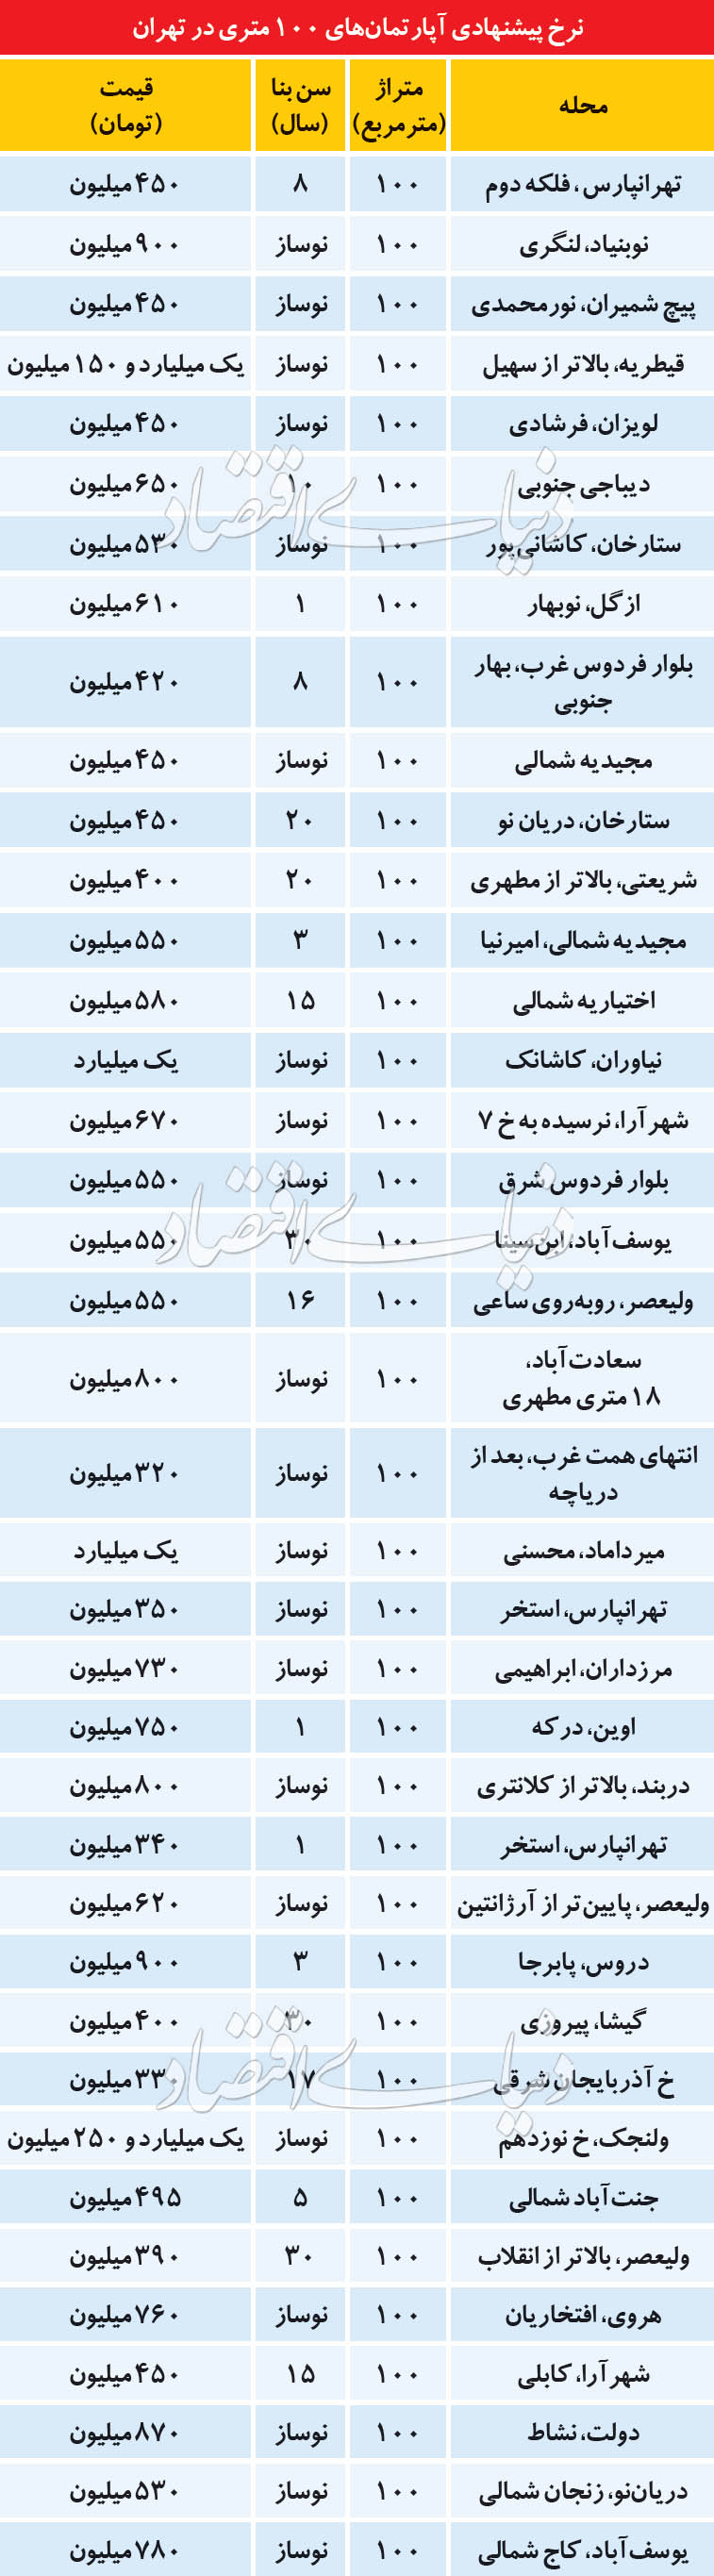 نرخ پیشنهادی آپارتمان های 100 متری در تهران + جدول